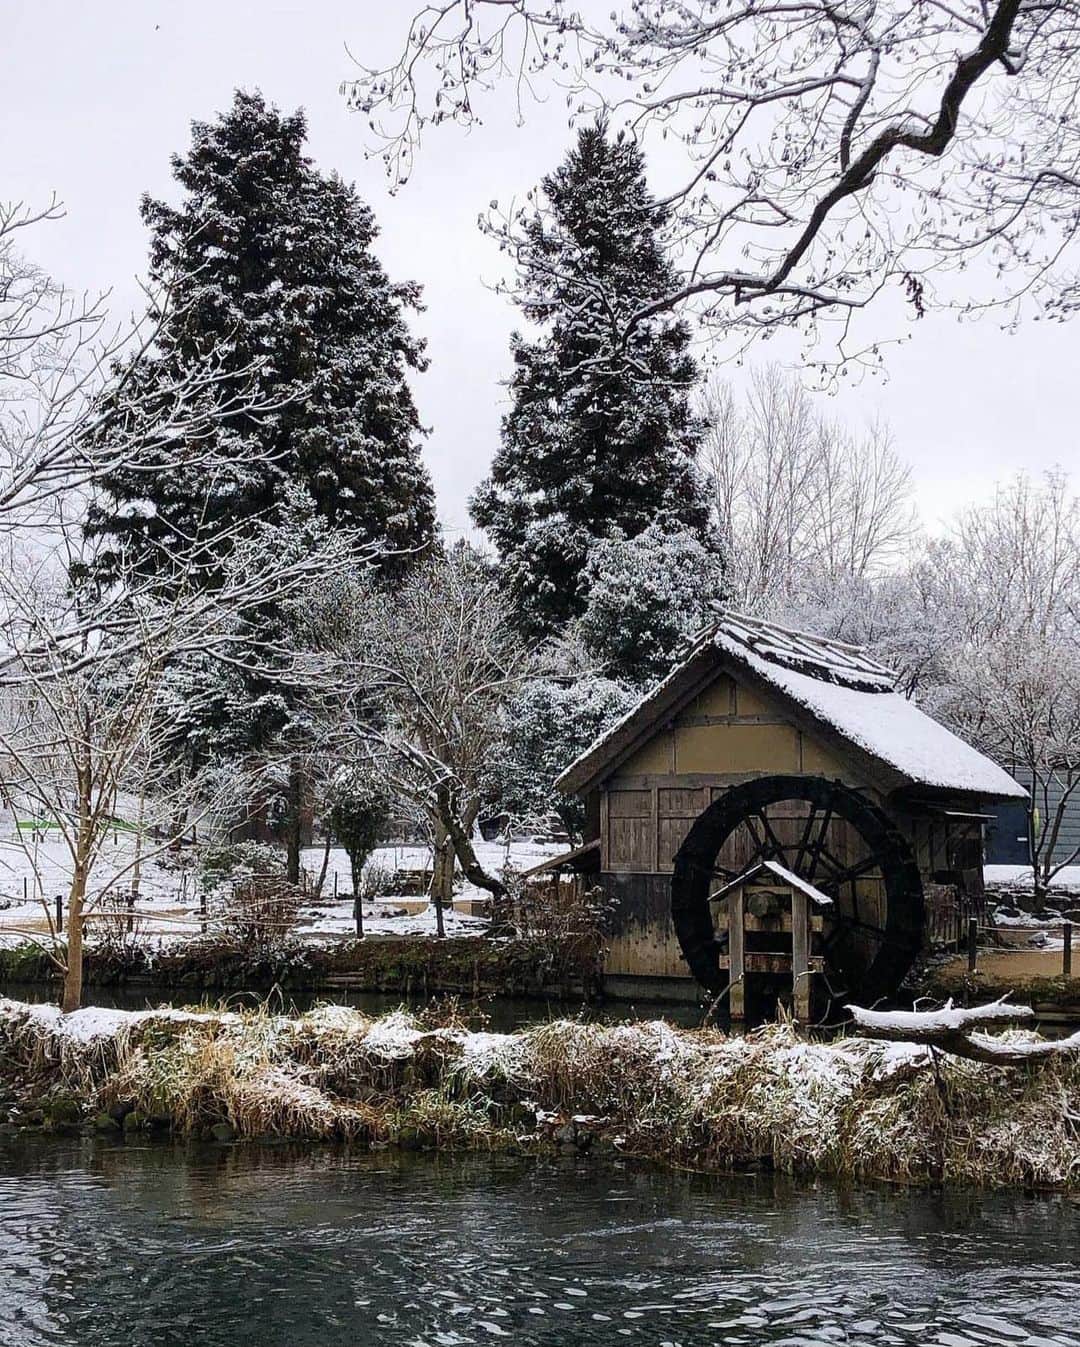 ?長野県 観光 公式インスタグラム のインスタグラム：「// Photo by @azuminoalpu  雪景色も趣がある 「大王わさび農場」 ＠安曇野市  日本最大級の規模を誇る 「大王わさび農場」 北アルプスからの雪解け水で一年を通して良質なわさびが栽培されています👀✨️  夏の緑美しい景色から、冬は風情を感じられる雪景色に⛄️✨️  施設では、わさびをメインに楽しめる定食や、わさびコロッケ、わさびソフトクリームなども販売しているので、わさびを存分に楽しむことができますよ😀✨️  ＝＝＝＝＝＝＝＝＝  Daio Wasabi Farm (Azumino City)  The Daio Wasabi Farm is one of the largest wasabi farms in Japan. Utilizing the snow melt from the Northern Japanese Alps, the farm grows high-quality wasabi throughout the year.  There’s charming scenery to enjoy in every season. In summer, it is surrounded in lush greenery, and in winter, it sits below snow-covered peaks.   You can also enjoy lunch sets and snacks flavored with wasabi, such as wasabi croquettes and wasabi soft serve.  ＿＿＿＿＿＿＿＿＿　  Location / Azumino City , Nagano , Japan   #おうちでながの #長野のいいところ #大王わさび農場 #安曇野市  ＿＿＿＿＿＿＿＿＿  🍁インスタアワード秋冬⛄作品募集中📷  #長野の列車旅秋冬 撮影場所(長野県内に限ります) をキャプションに入れて 応募期間（10/16～1/31）に投稿してください。 優秀作品に選ばれると 長野県特産品セットをプレゼント🎁」